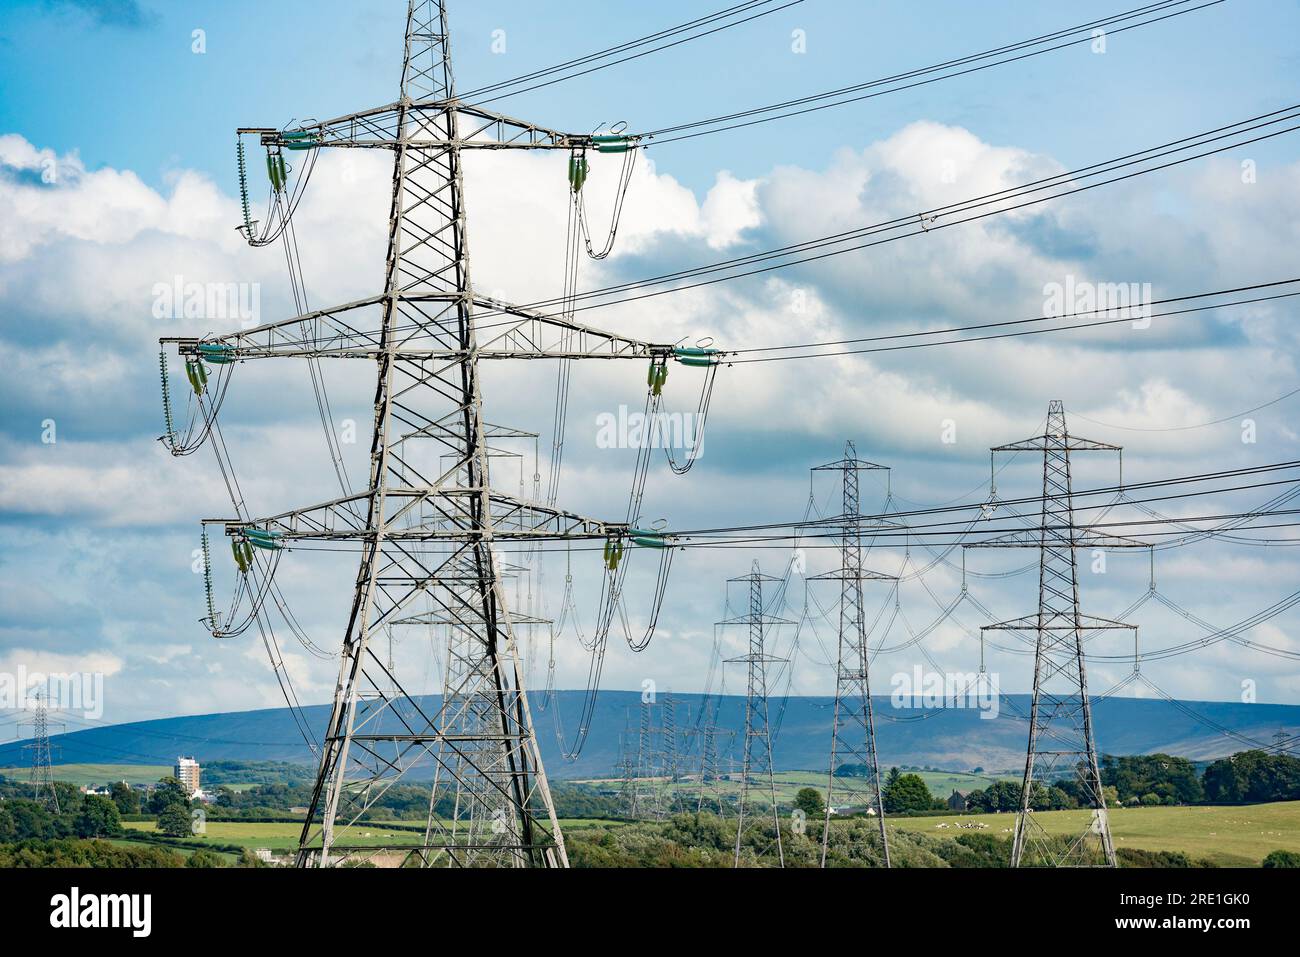 Pylônes électriques empruntant l'électricité de la centrale électrique de Heysham, Lancashire, Royaume-Uni Banque D'Images